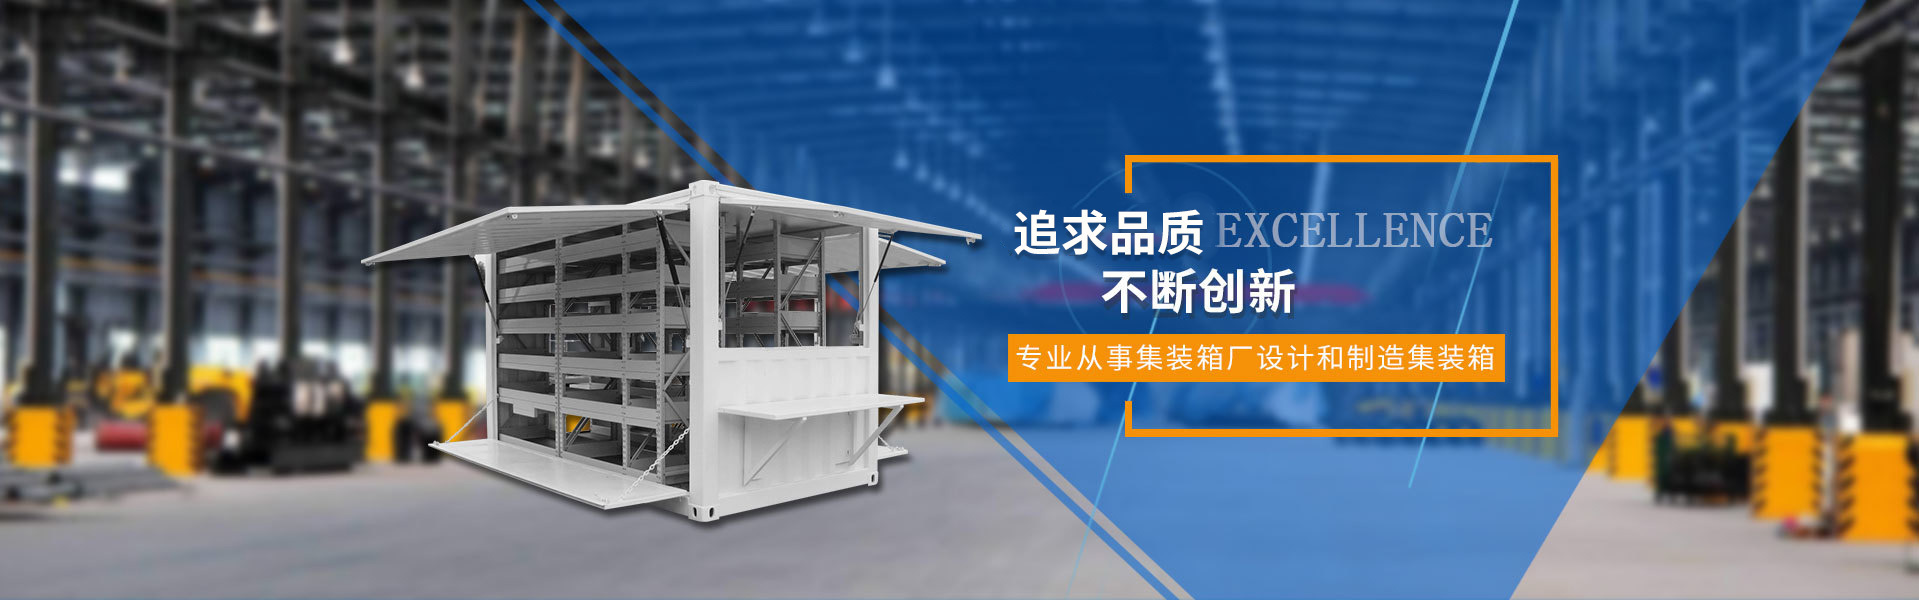 上海悦新特种集装箱发展有限公司